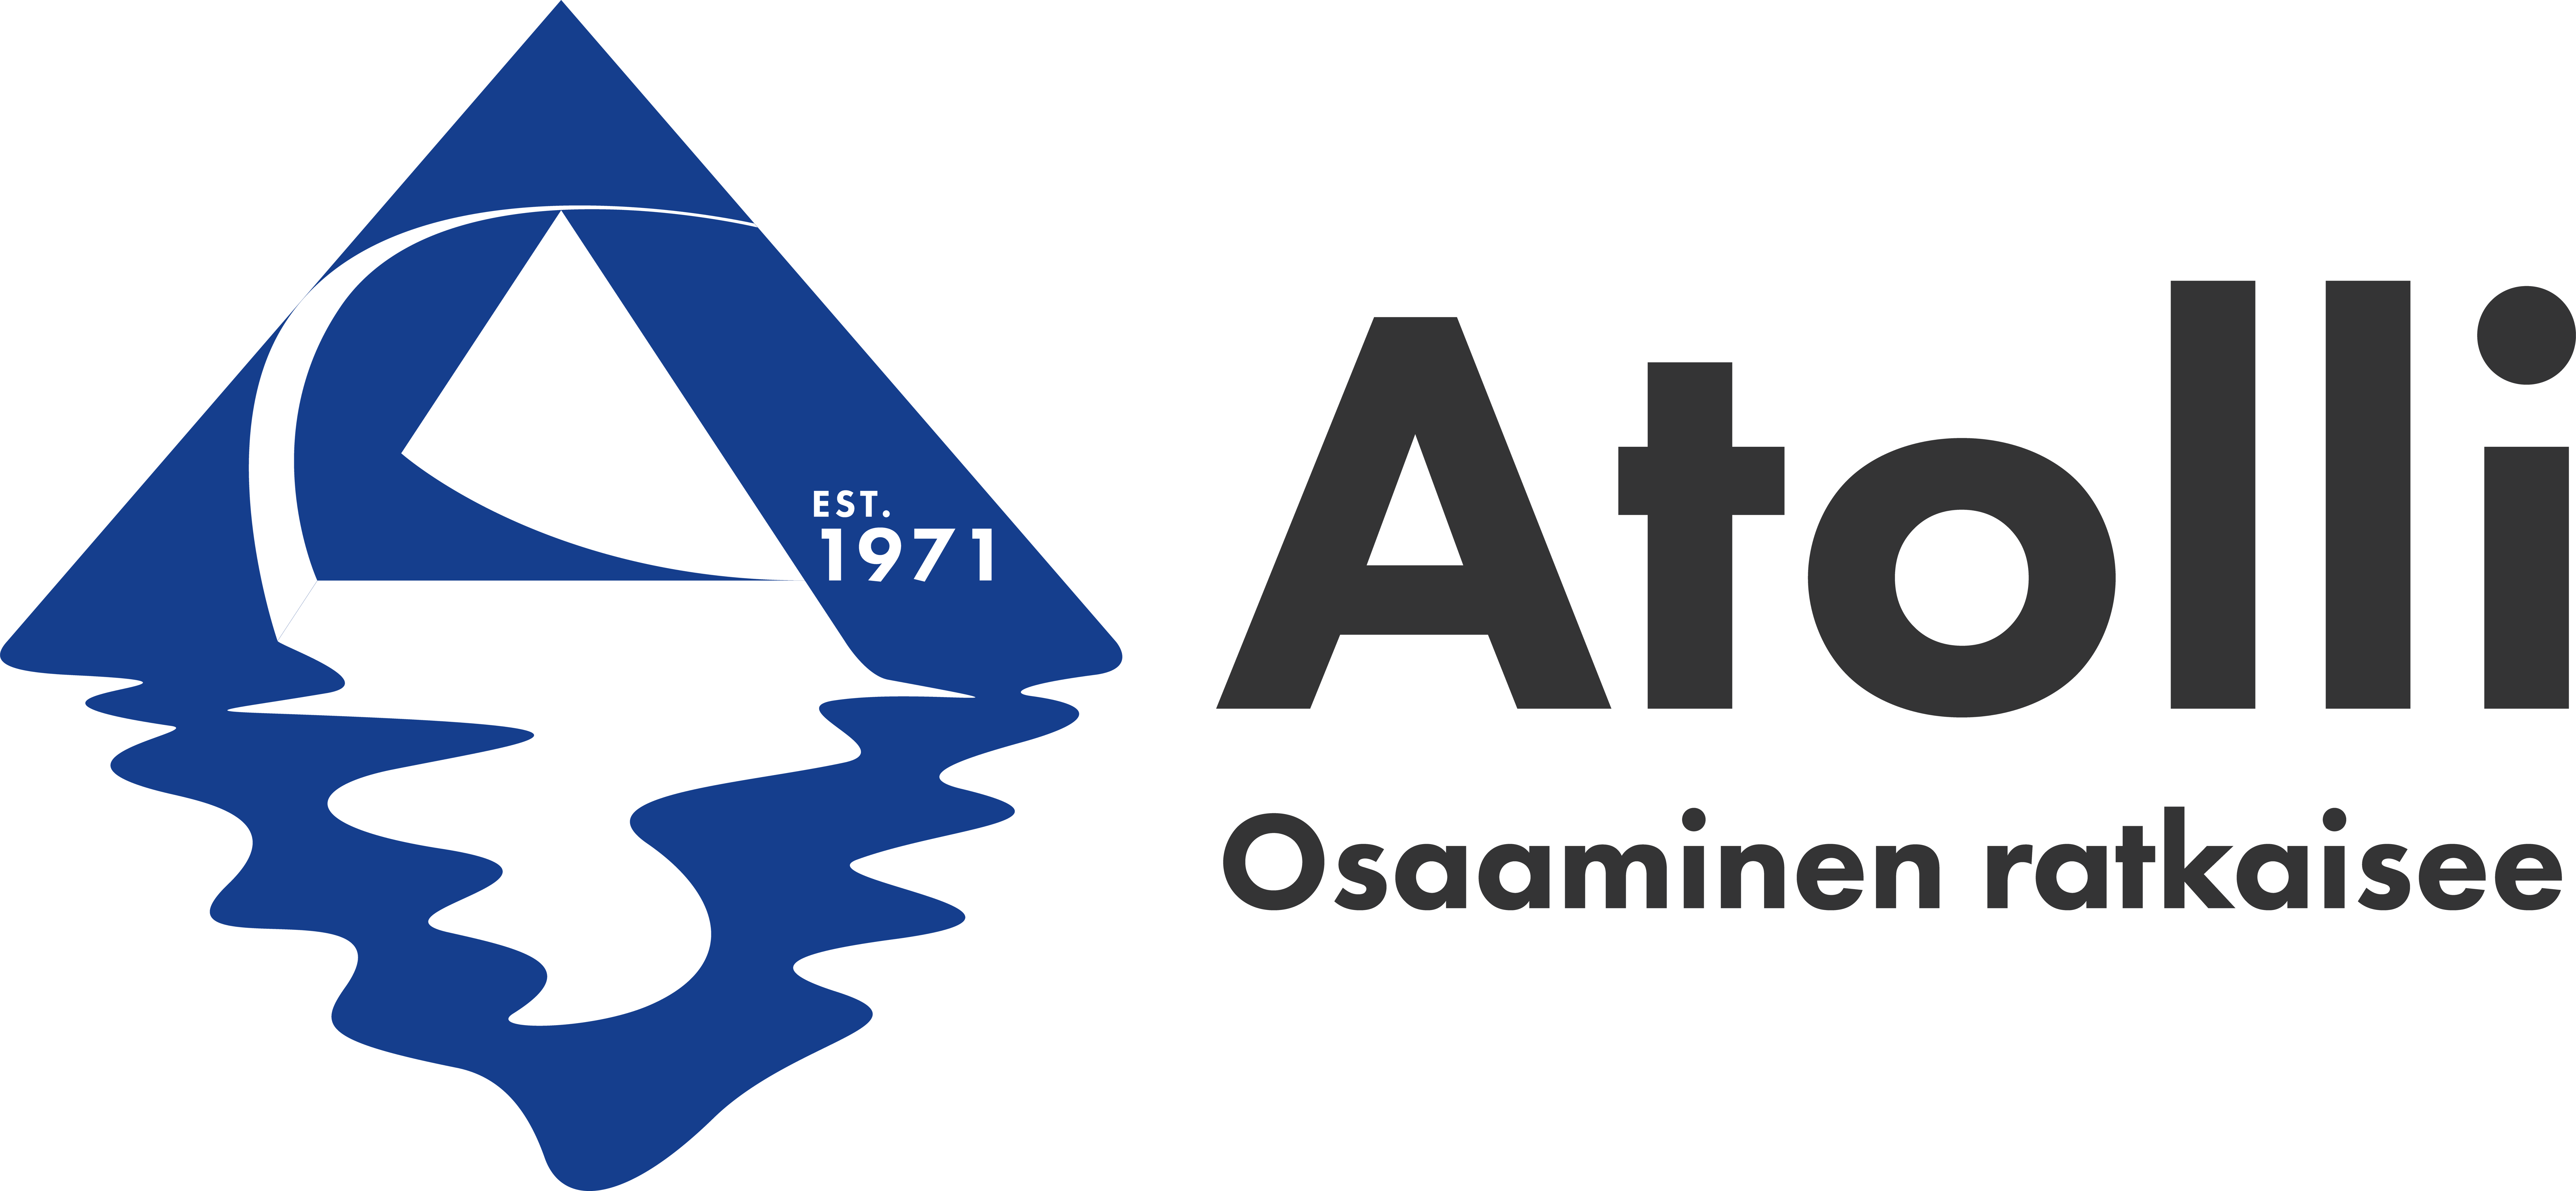 atolli logo